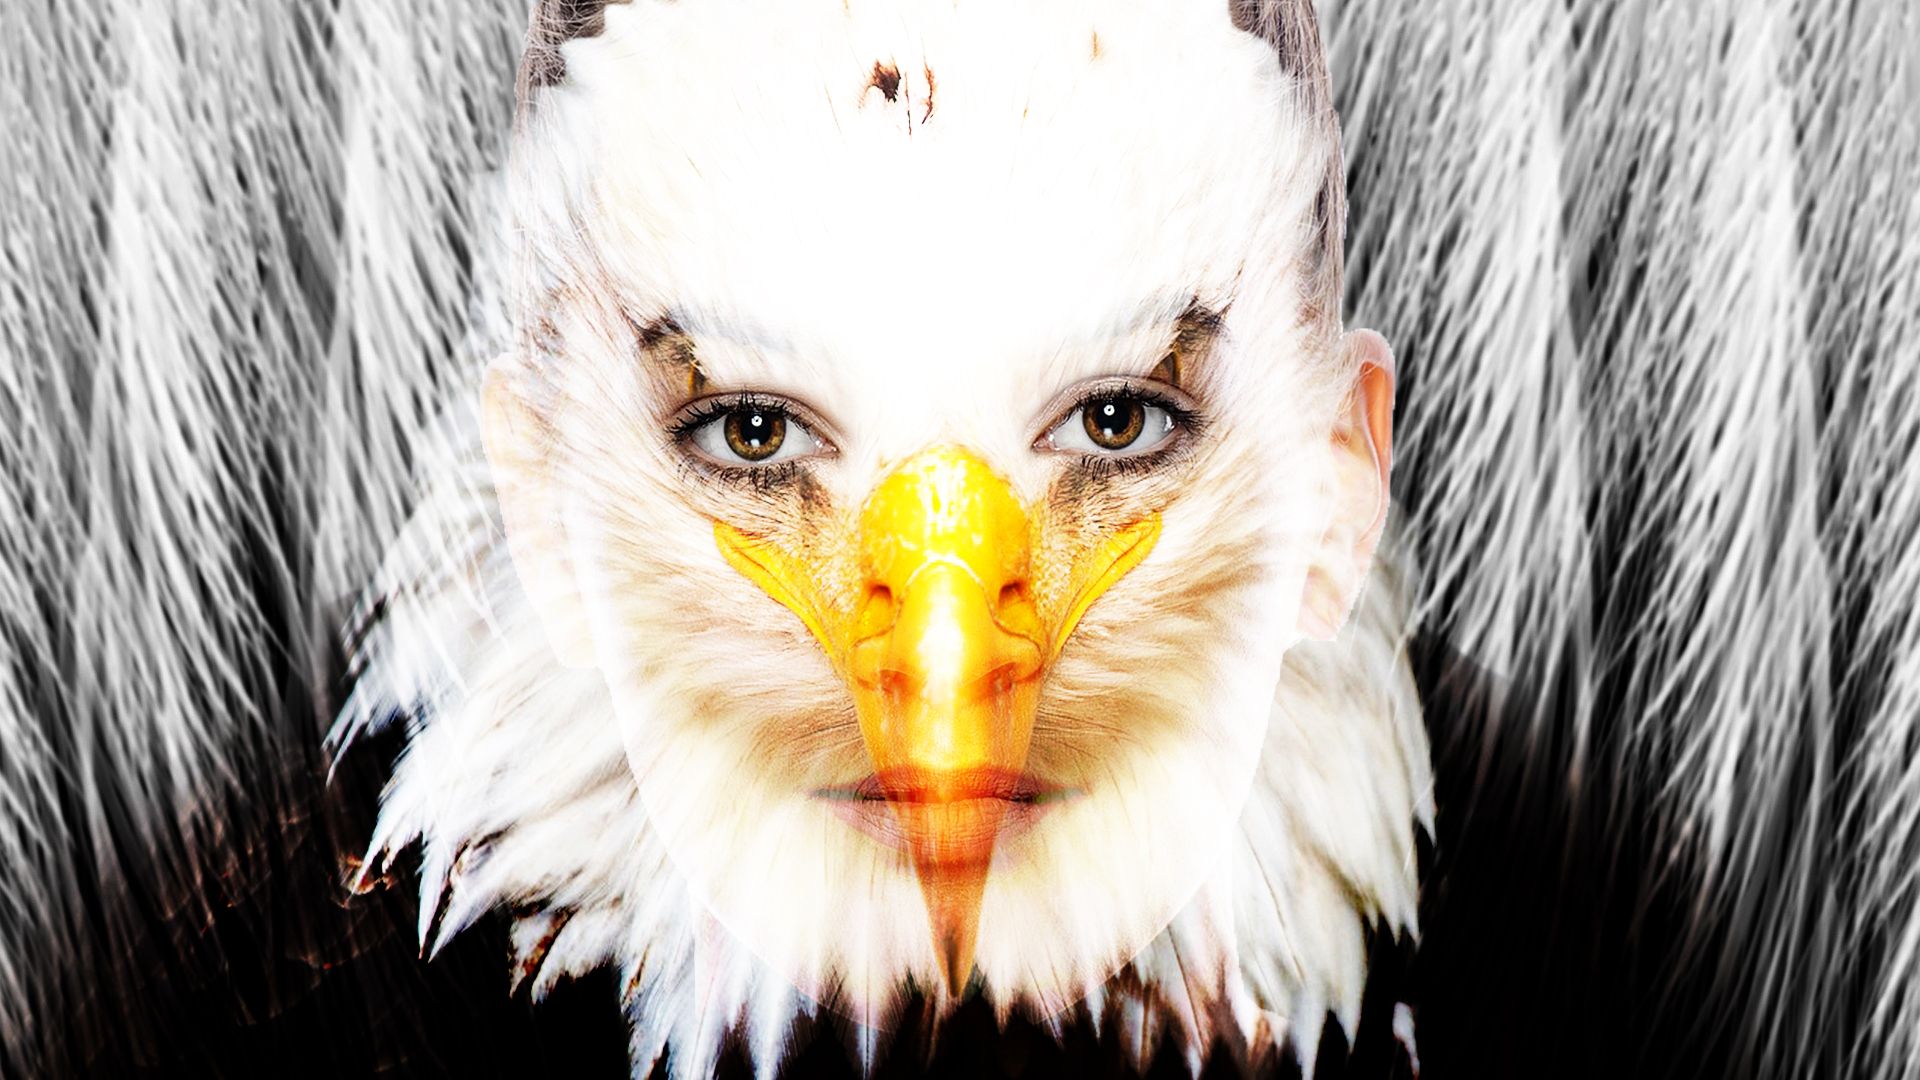 Mujer águila 4.jpg